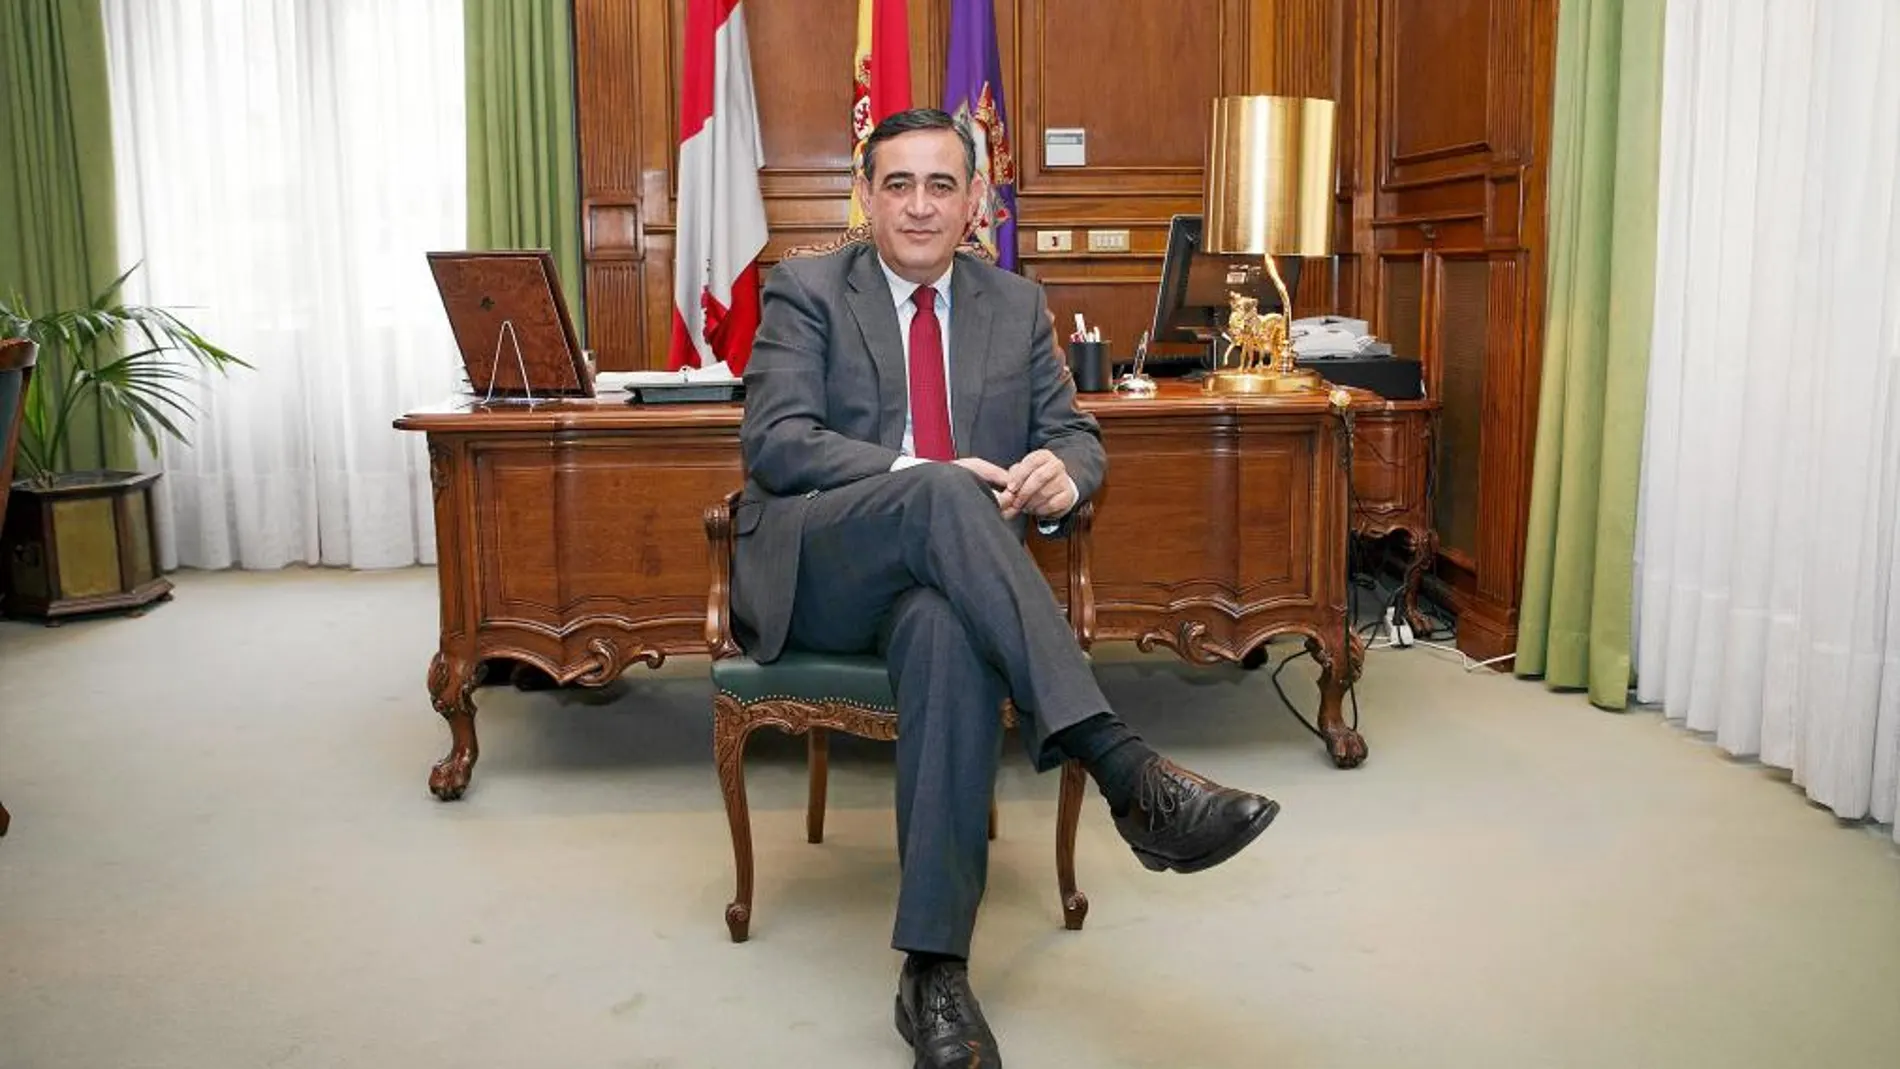 El presidente de la Diputación de Soria, Antonio Pardo, en su despacho en la institución